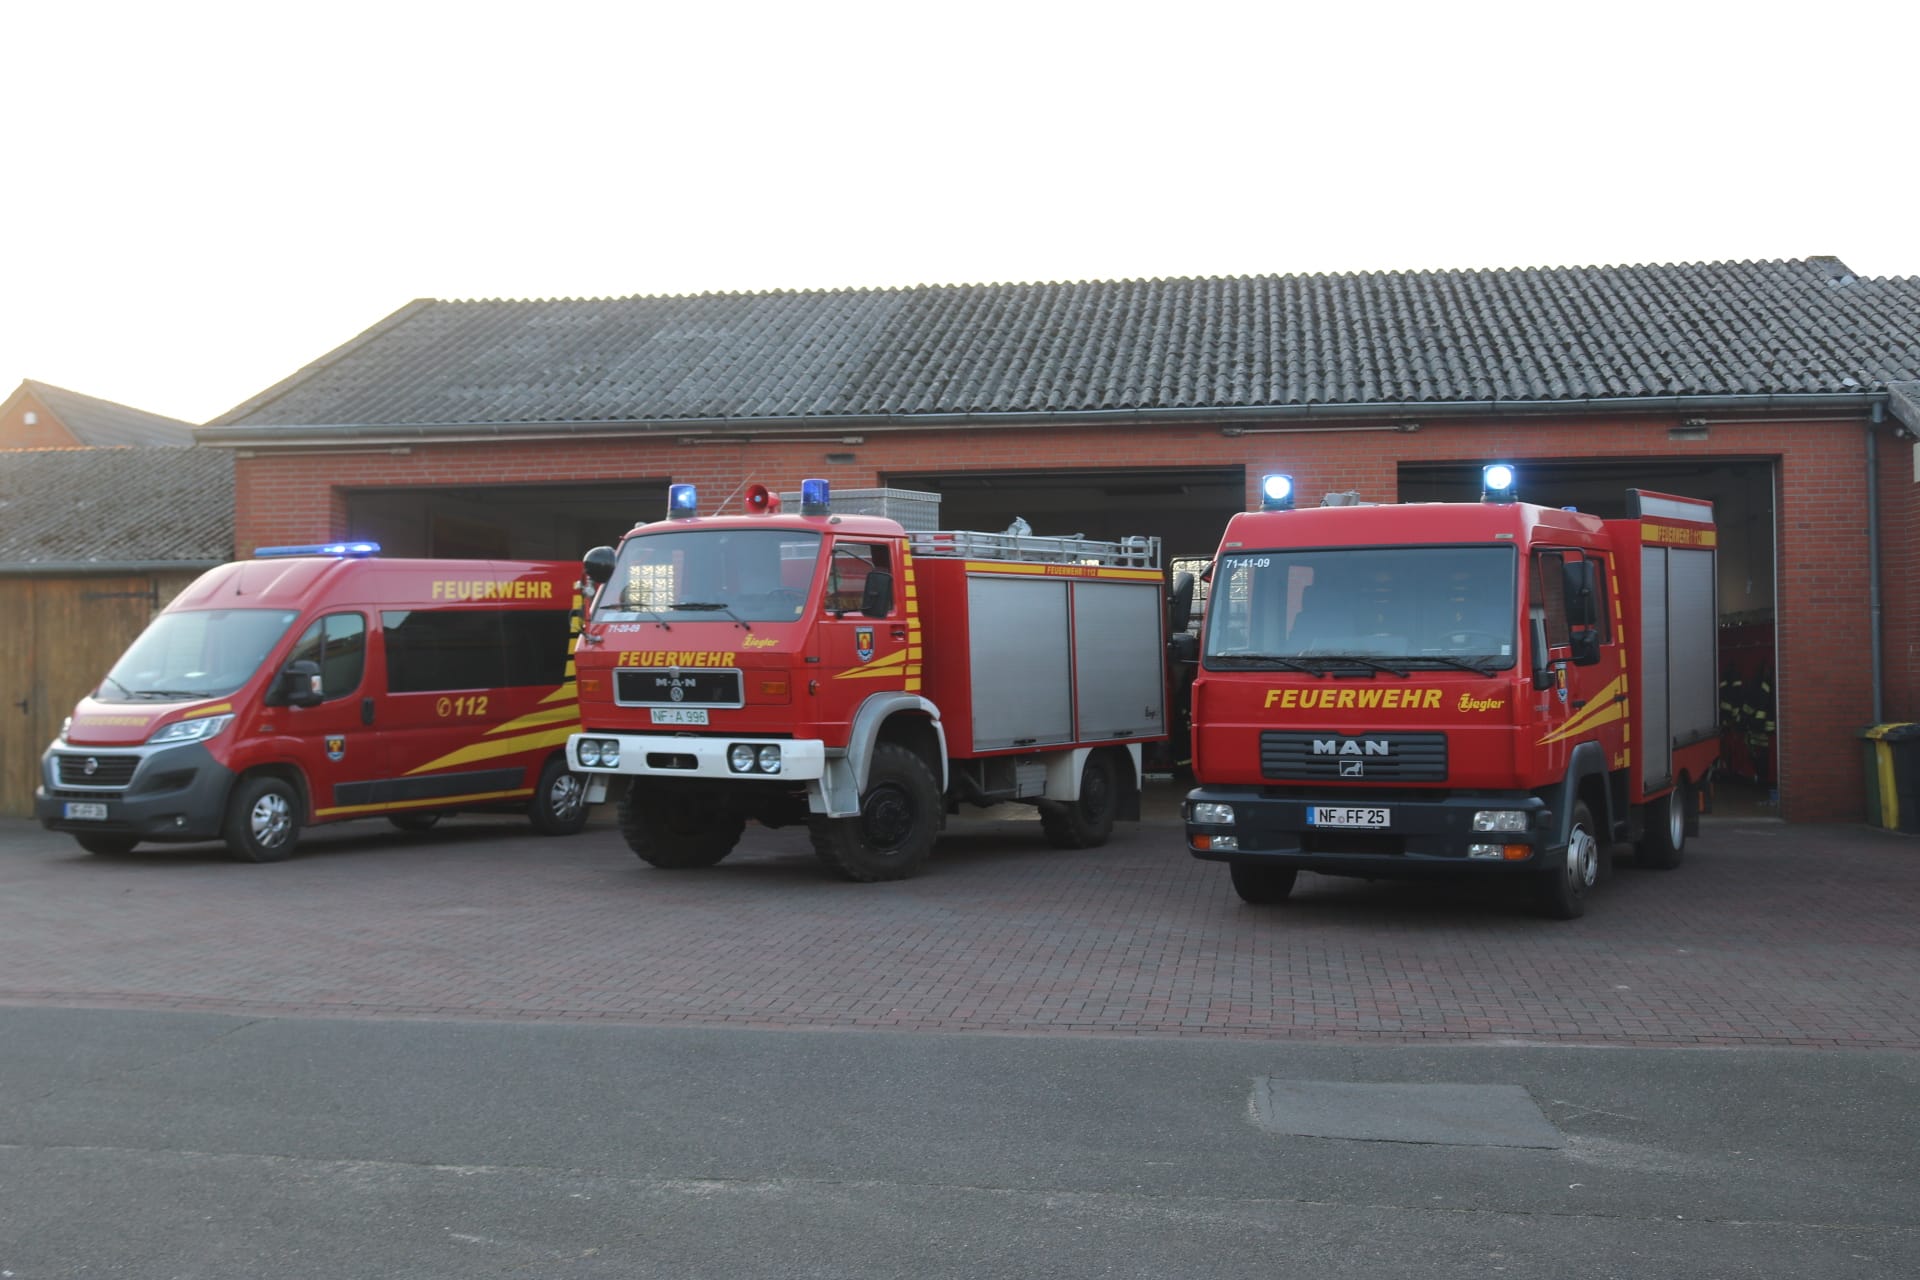 (c) Feuerwehr-ostenfeld.de